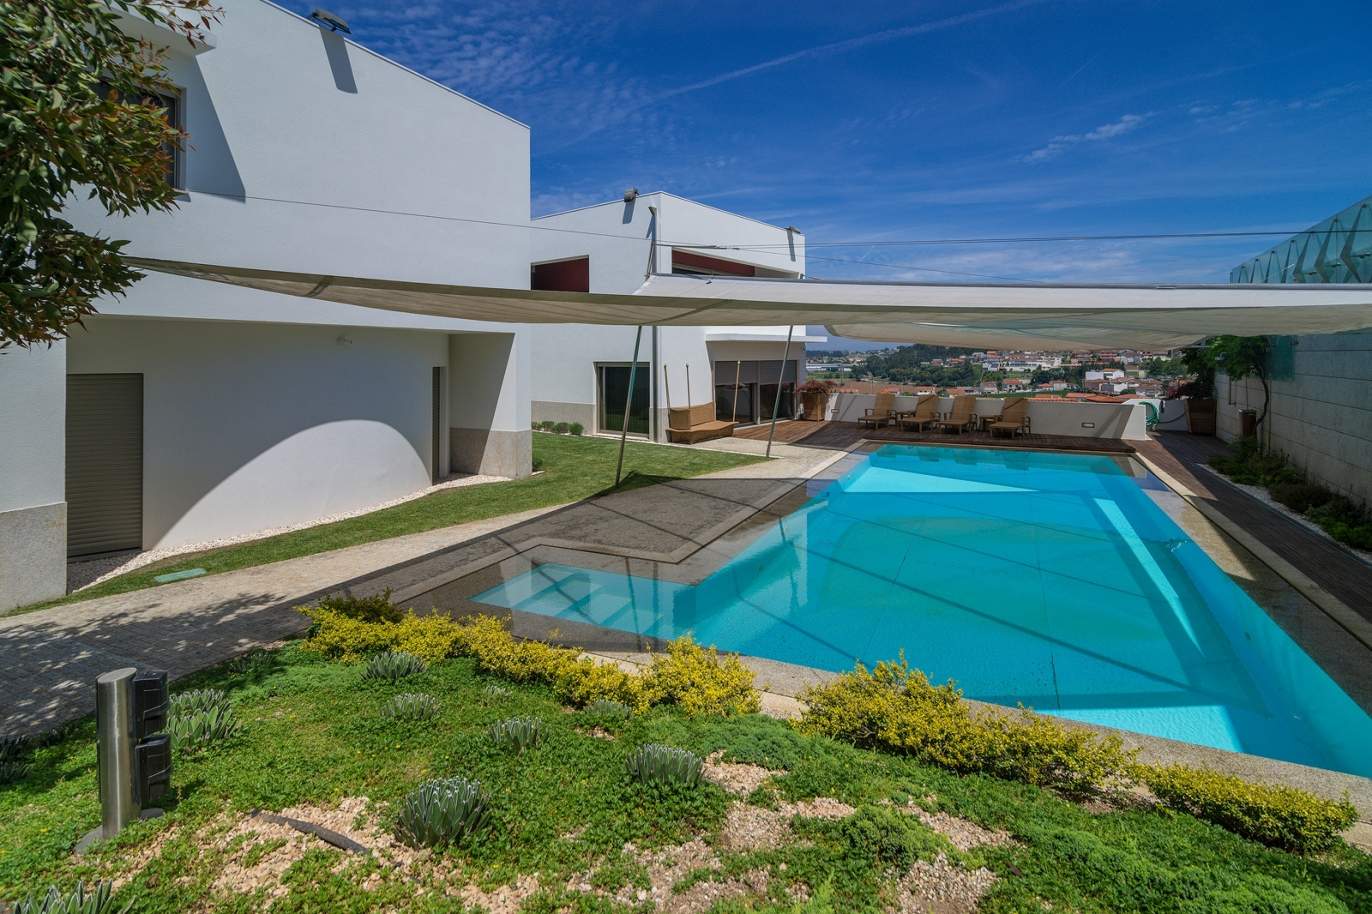 Villa mit 3 Schlafzimmern, mit Pool und Garten, zu verkaufen, in Trofa, Porto, Portugal_154947